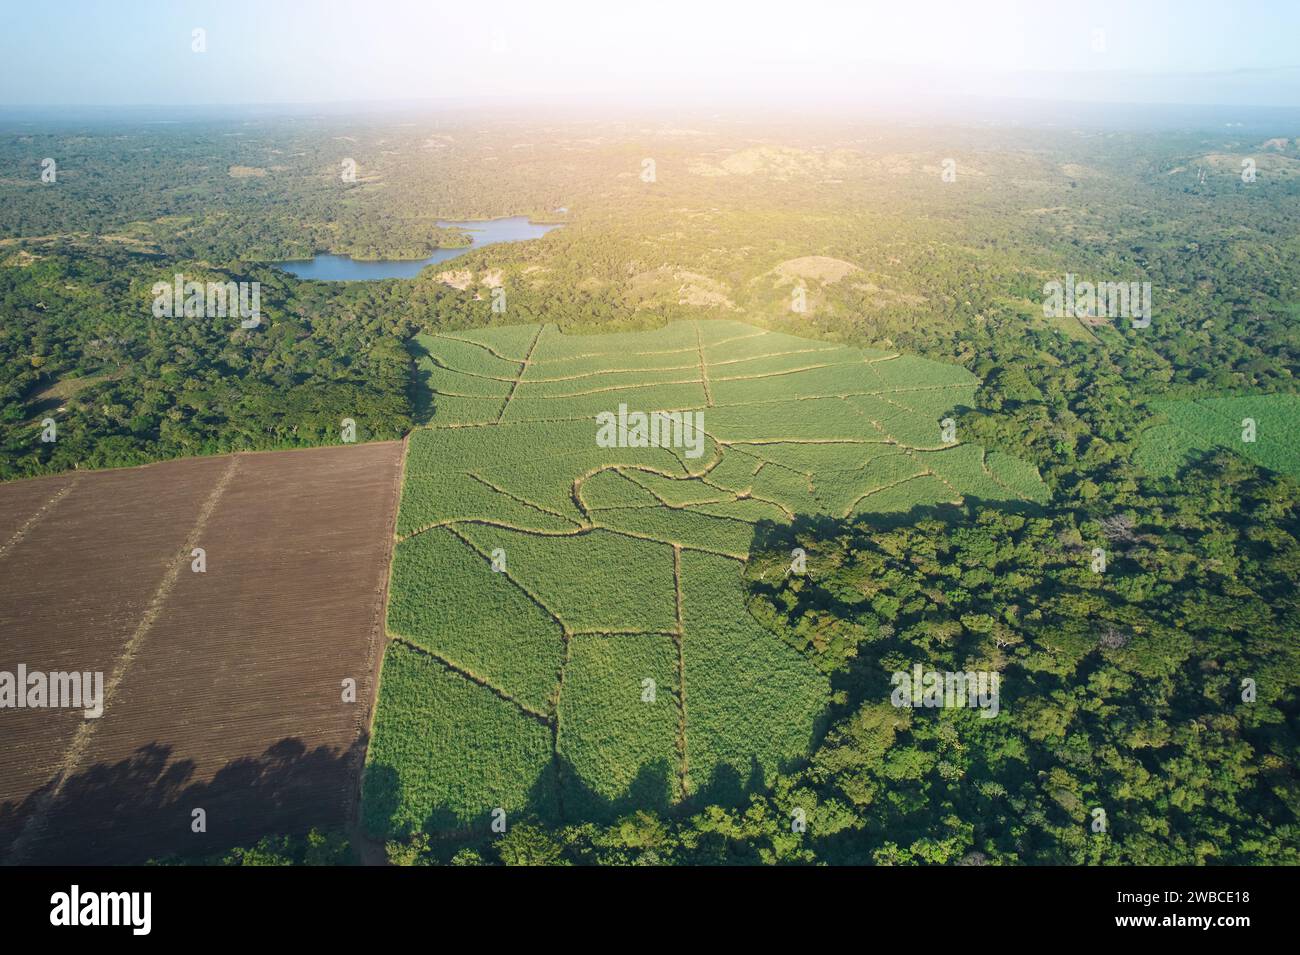 Paesaggio aereo di campi verdi con spazio agricolo Foto Stock